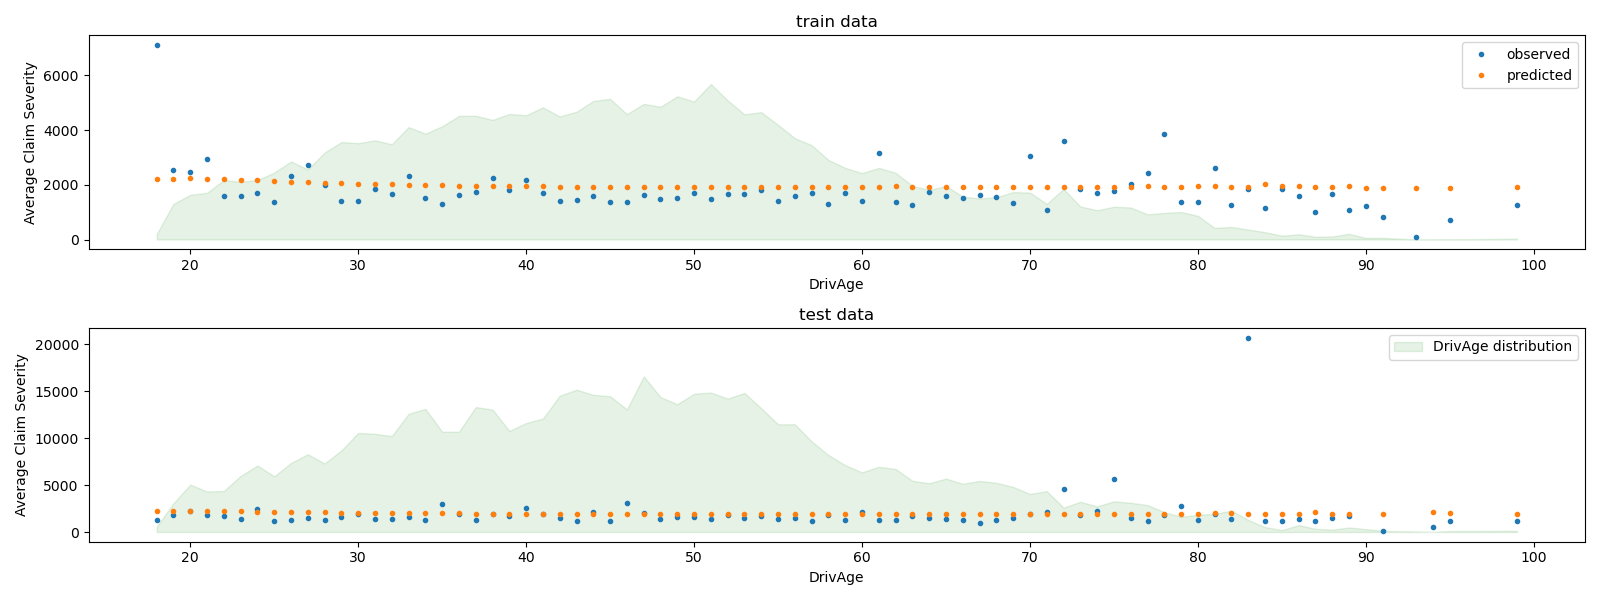 train data, test data